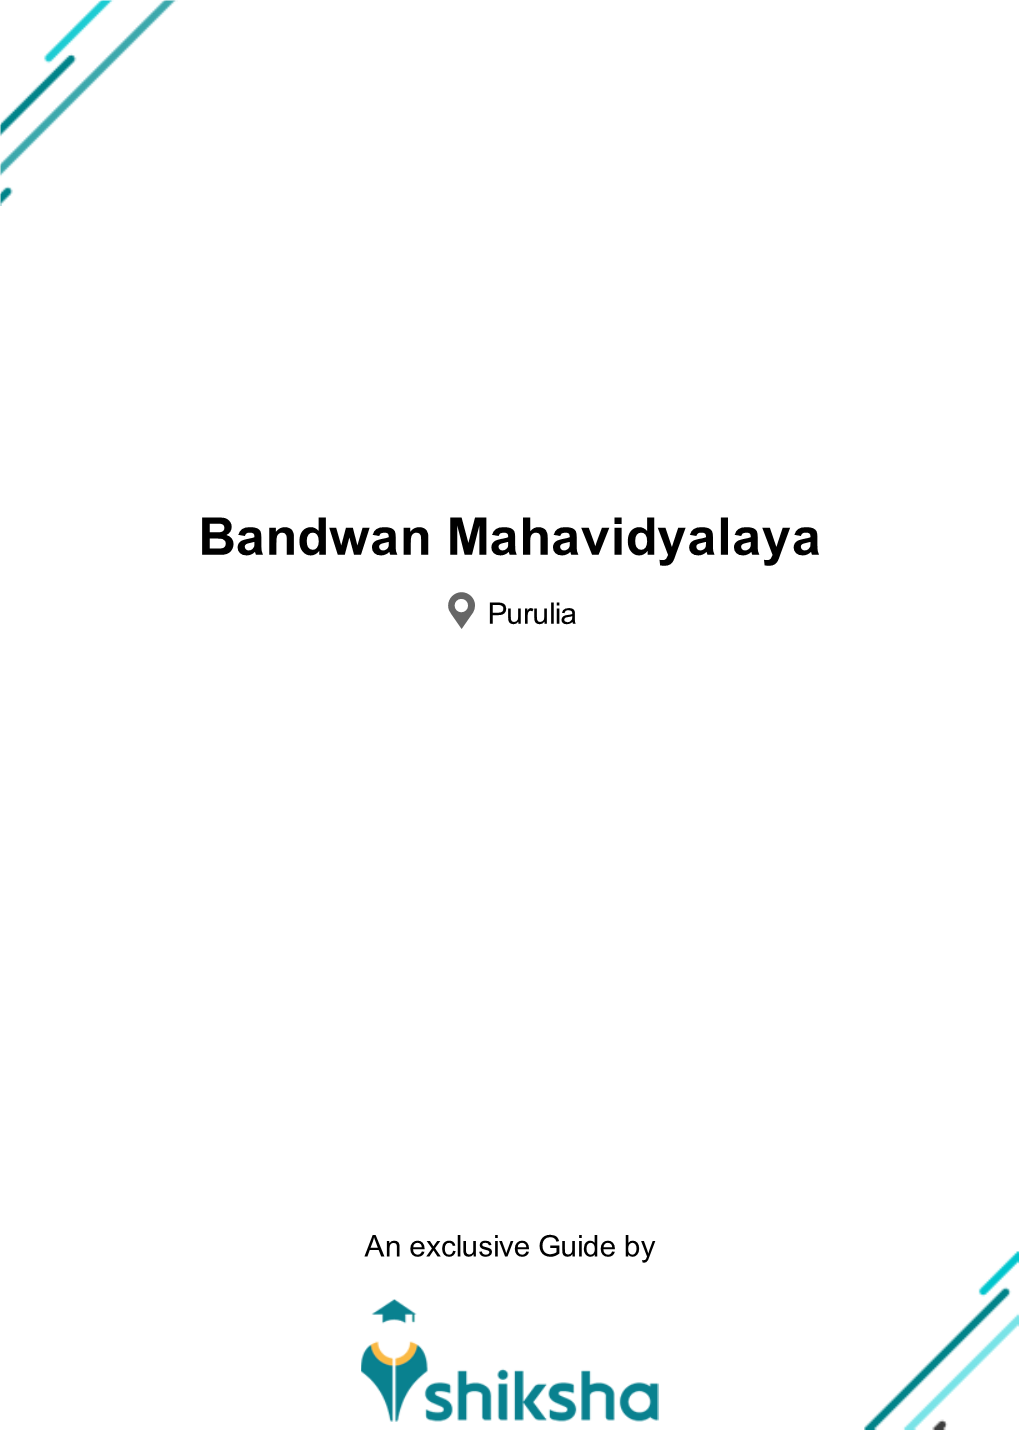 Bandwan Mahavidyalaya